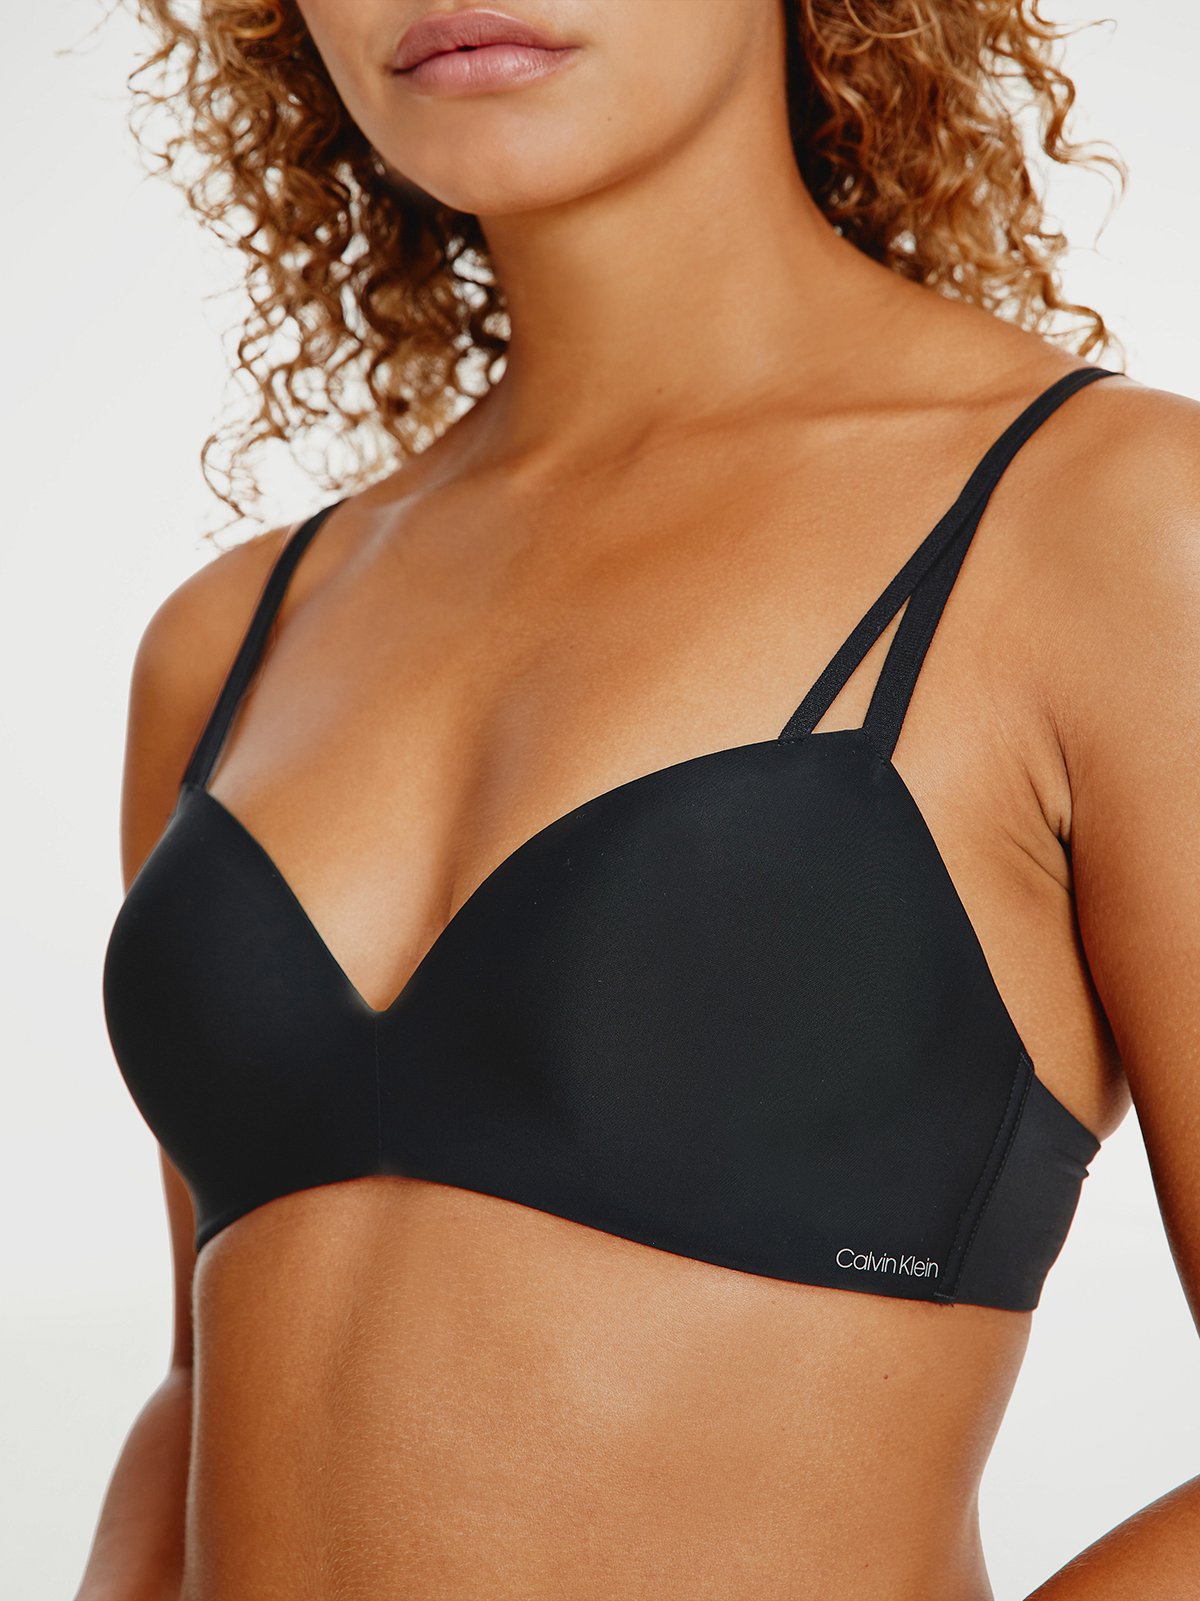 Women's bra black Calvin Klein Underwear